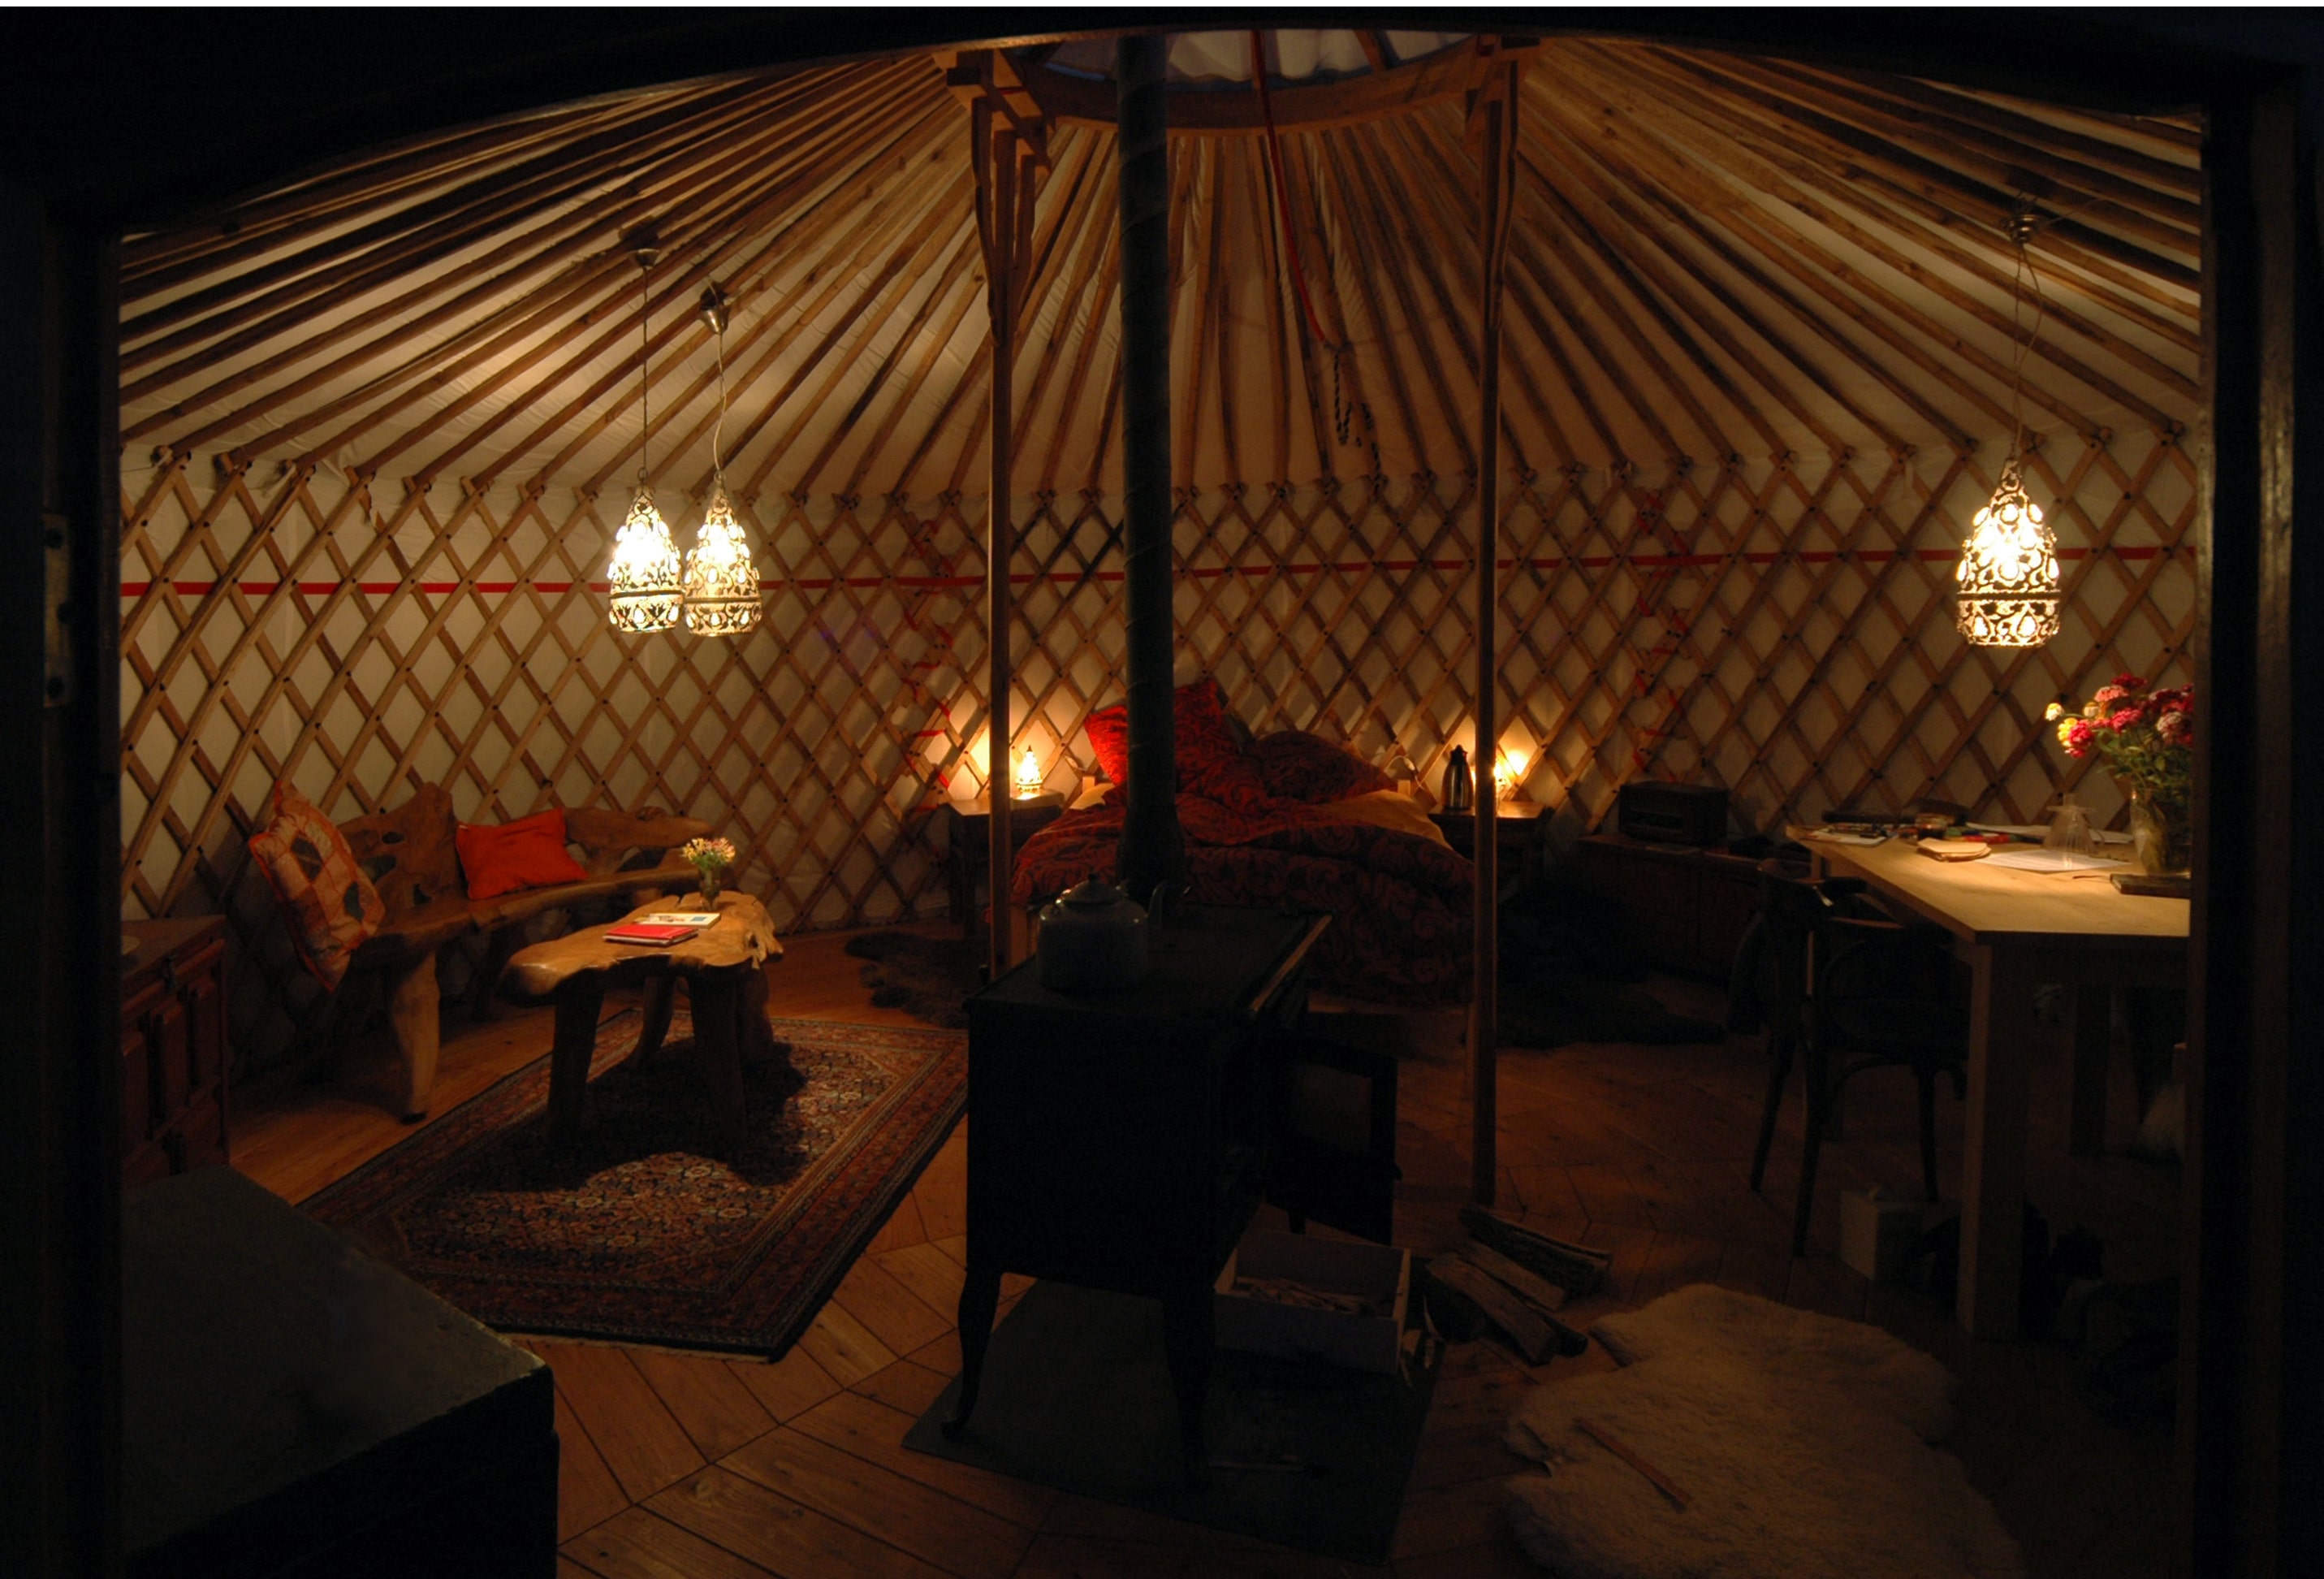 avond-yurt-texel-binnenkijkje_-_kopie-min.jpg